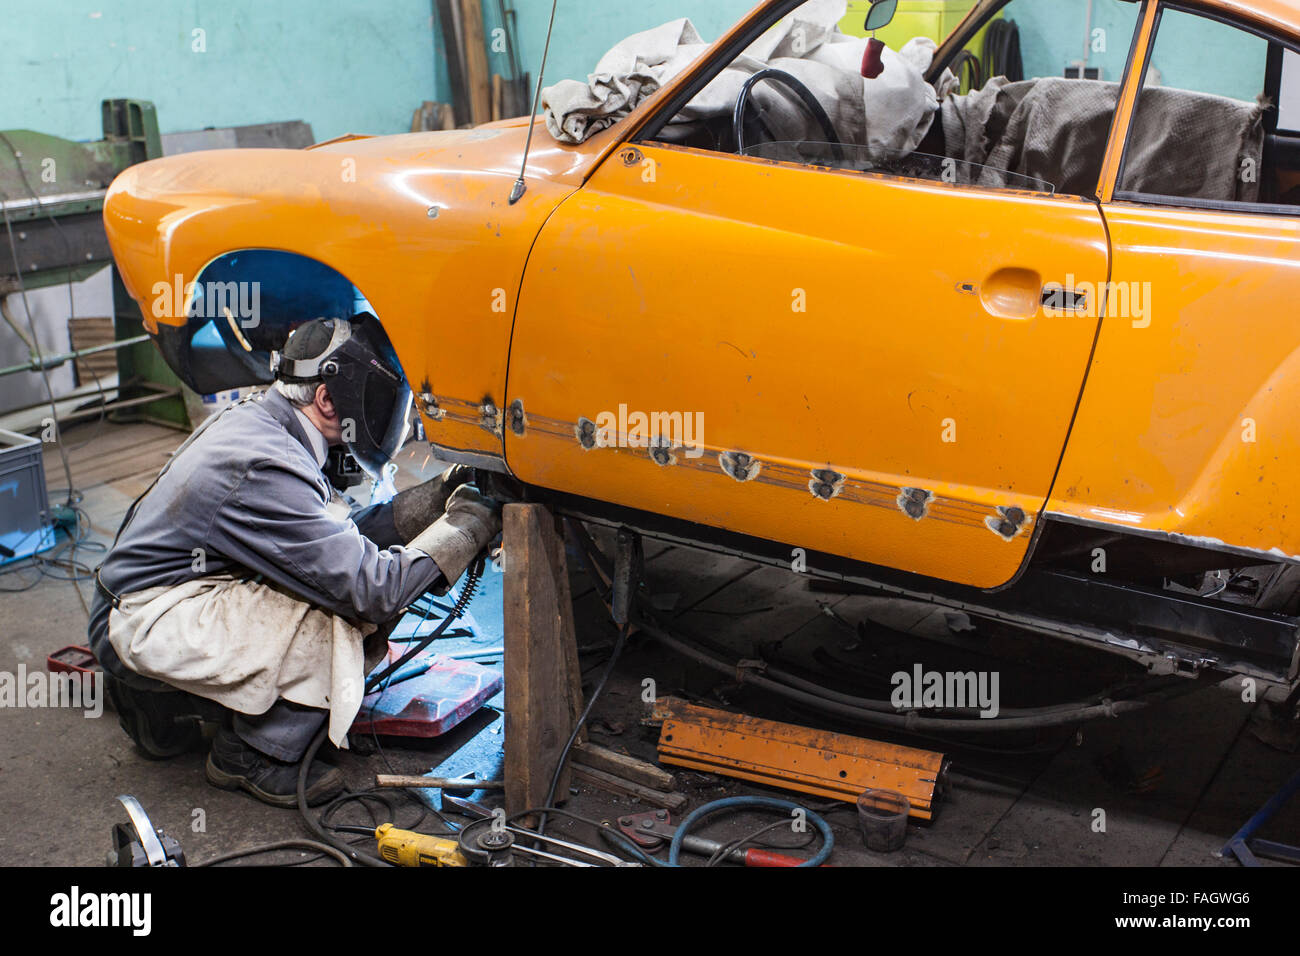 Karosseriebauer stellt ein Oldtimer VW Karmann Ghia. Schweißarbeiten an der Karosserie des Fahrzeugs. Stockfoto